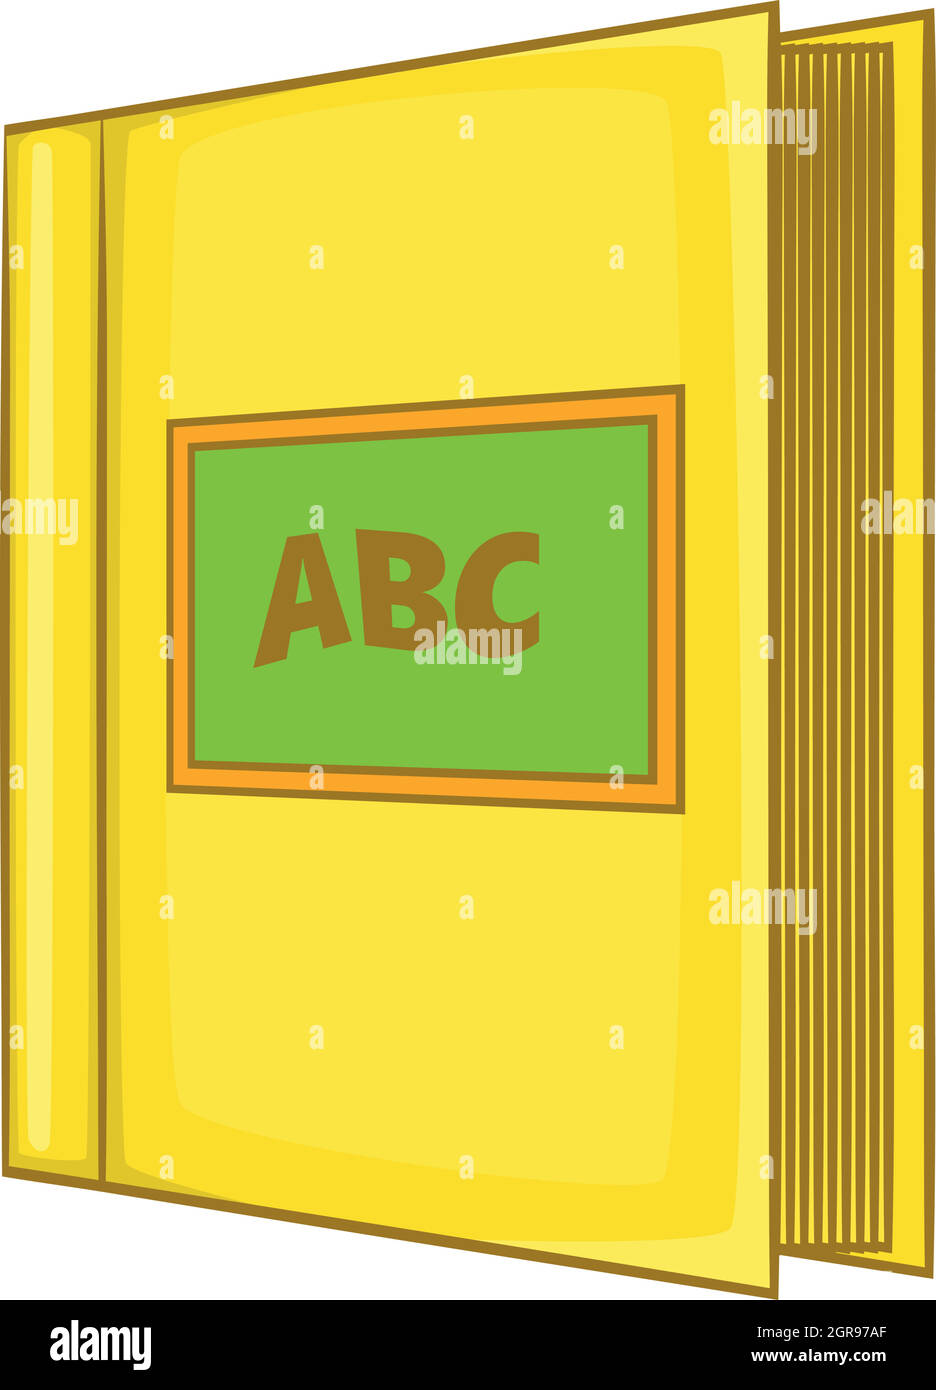 Abc icona a forma di libro, stile cartoon Illustrazione Vettoriale